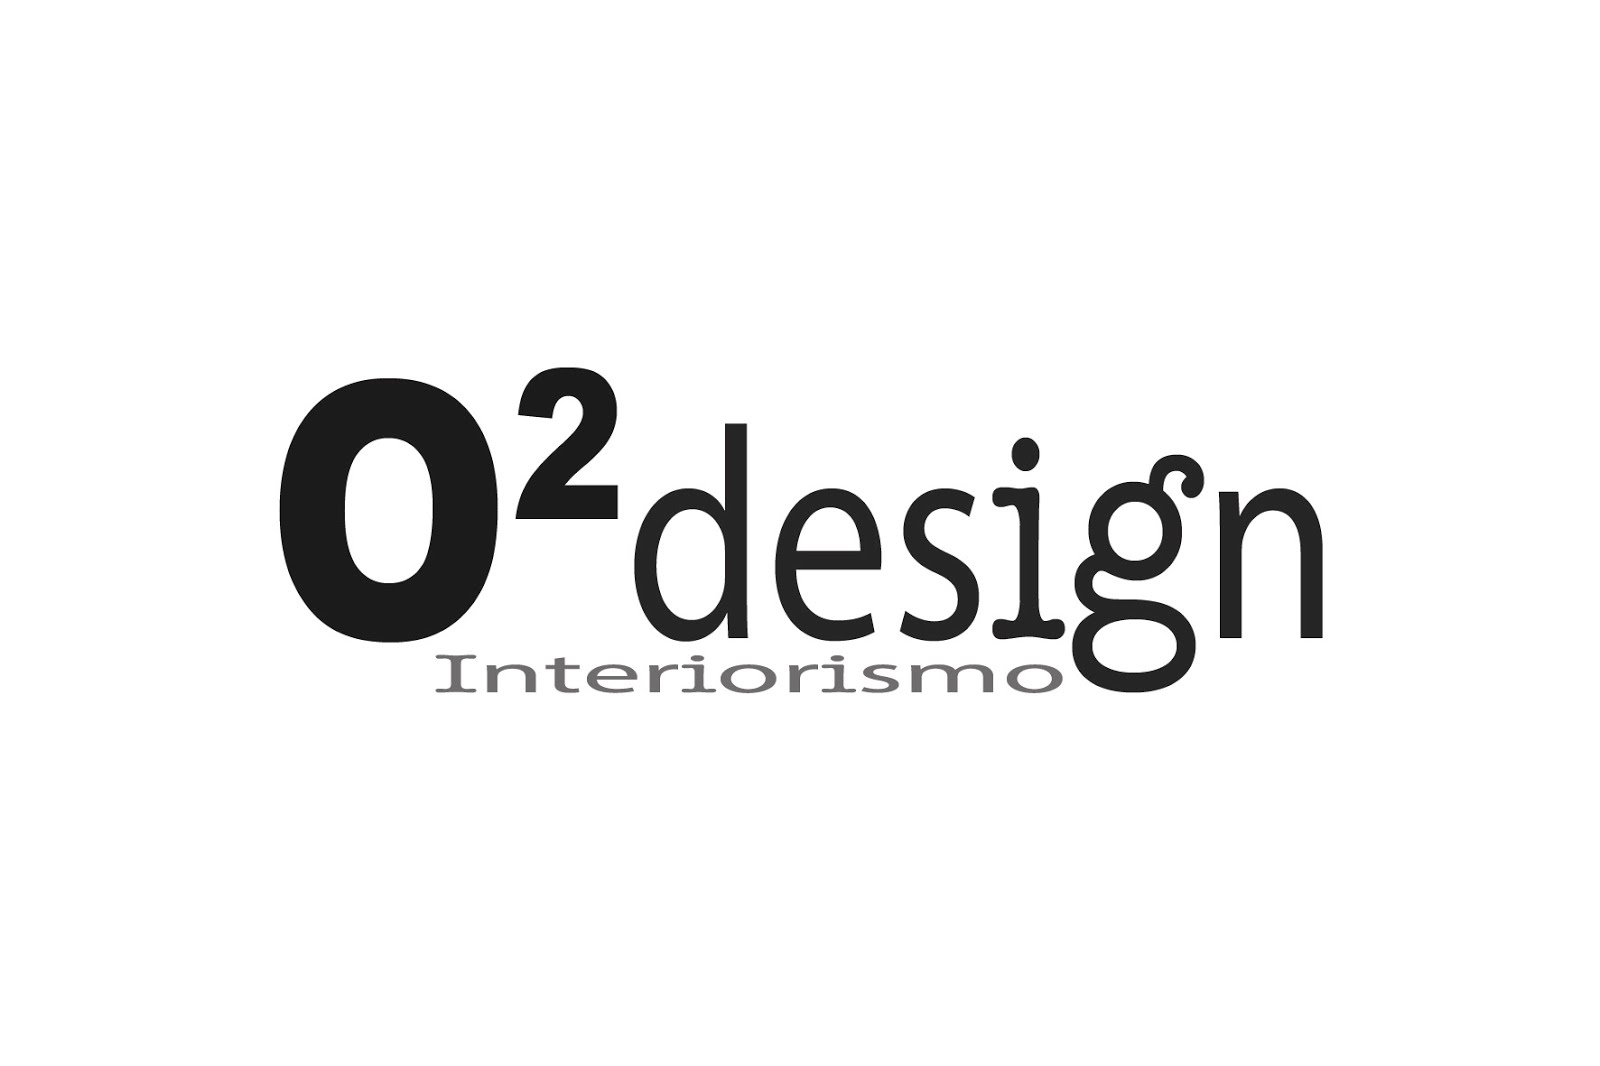  02 Design